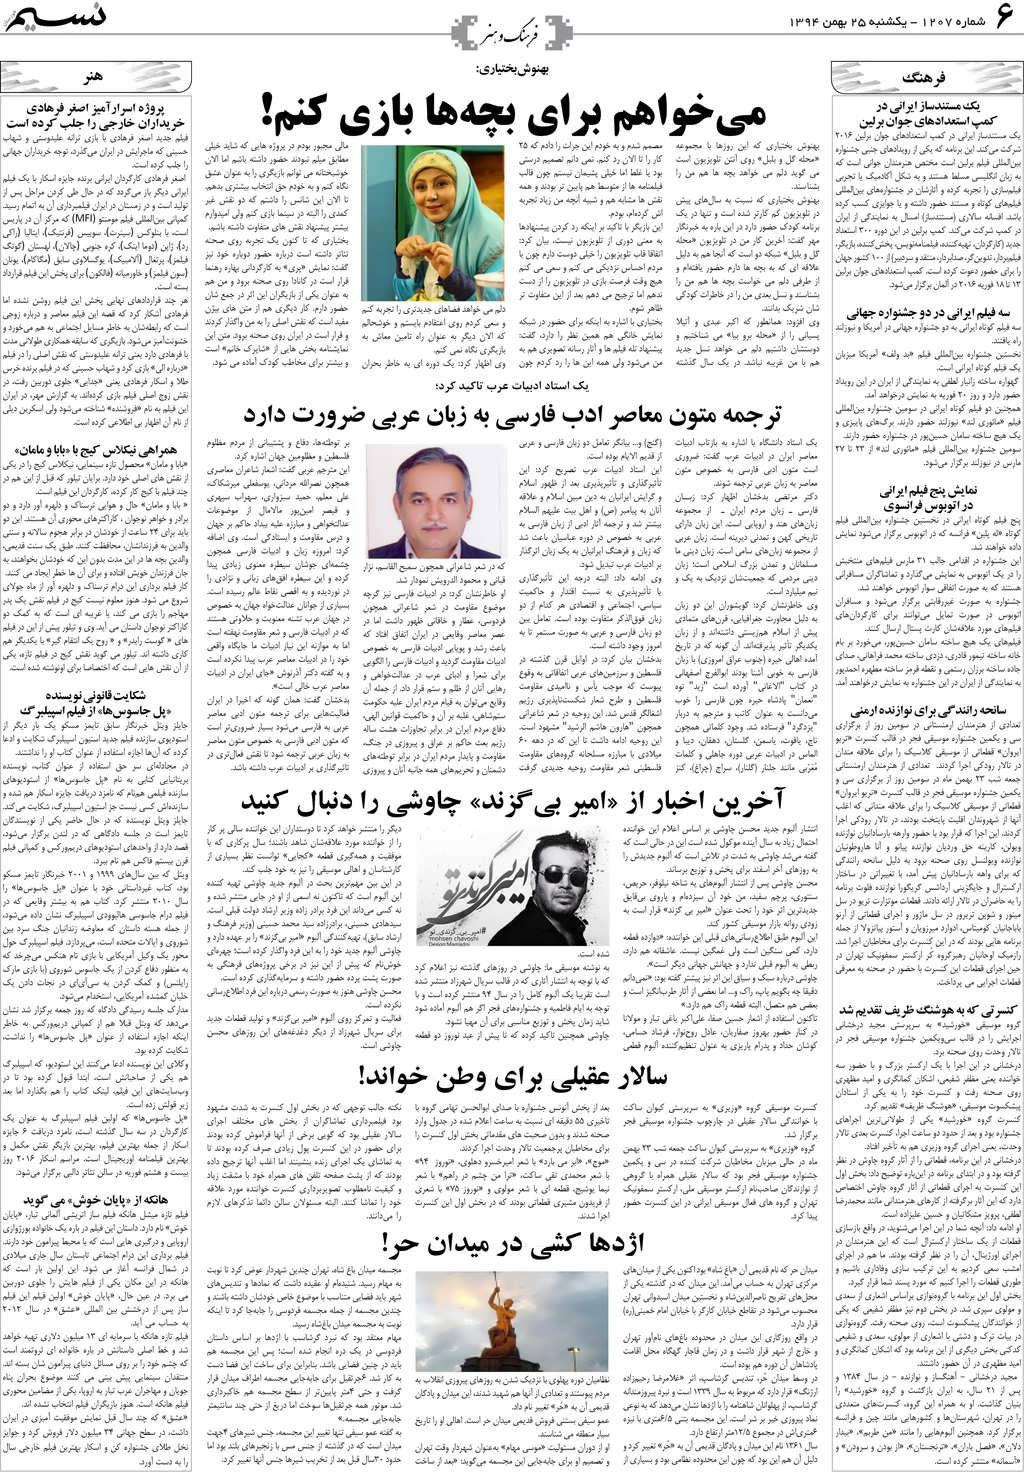 صفحه فرهنگ و هنر روزنامه نسیم شماره 1207